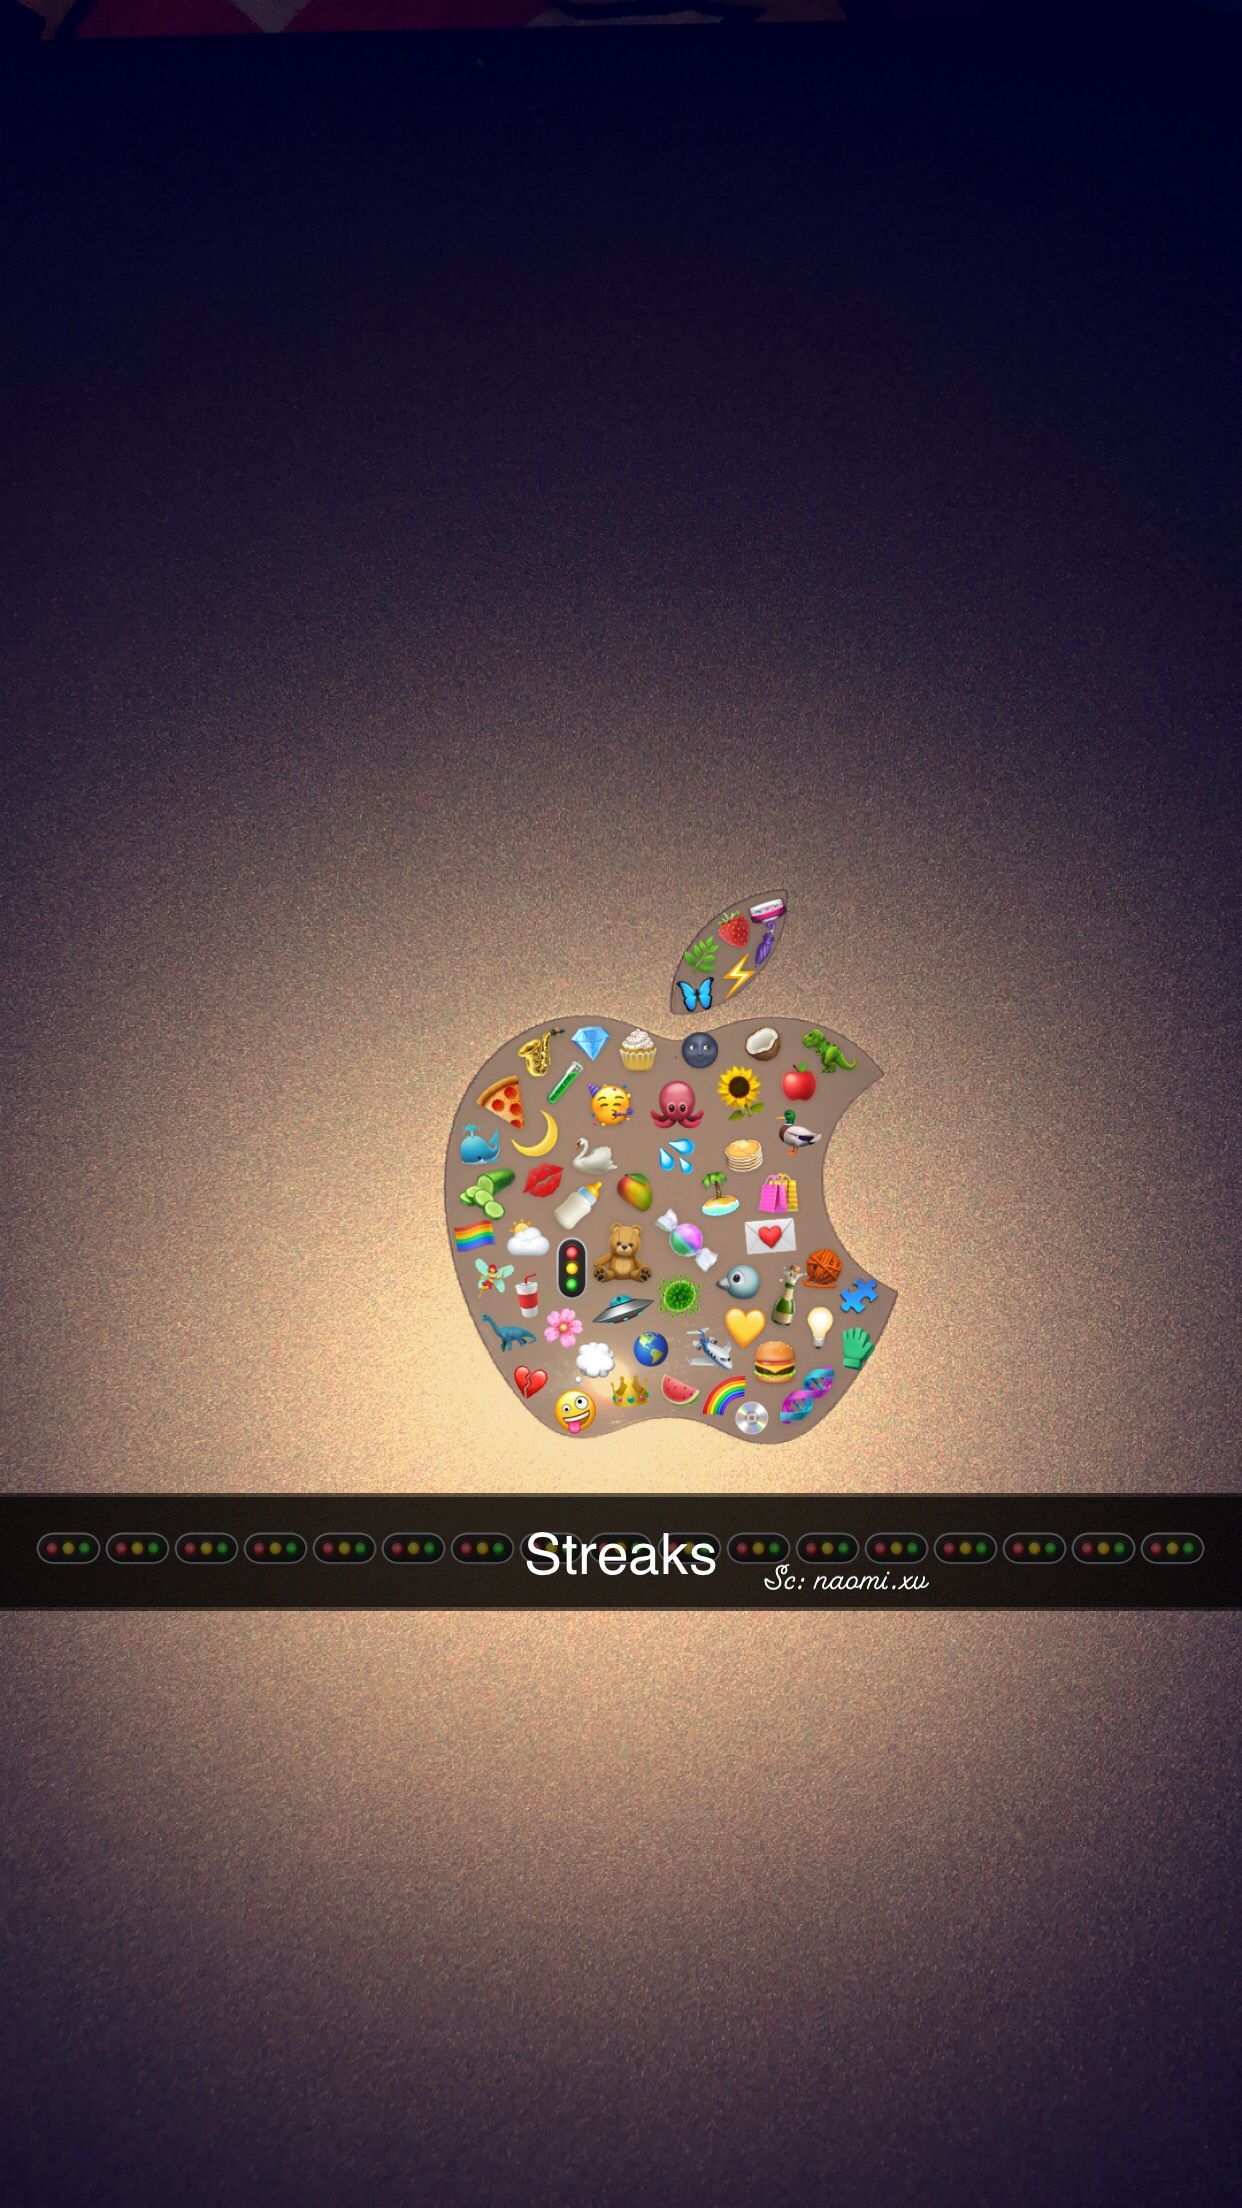 streaks #emoji #apple #iphone. Aesthetic wallpaper, Apple emojis, Image